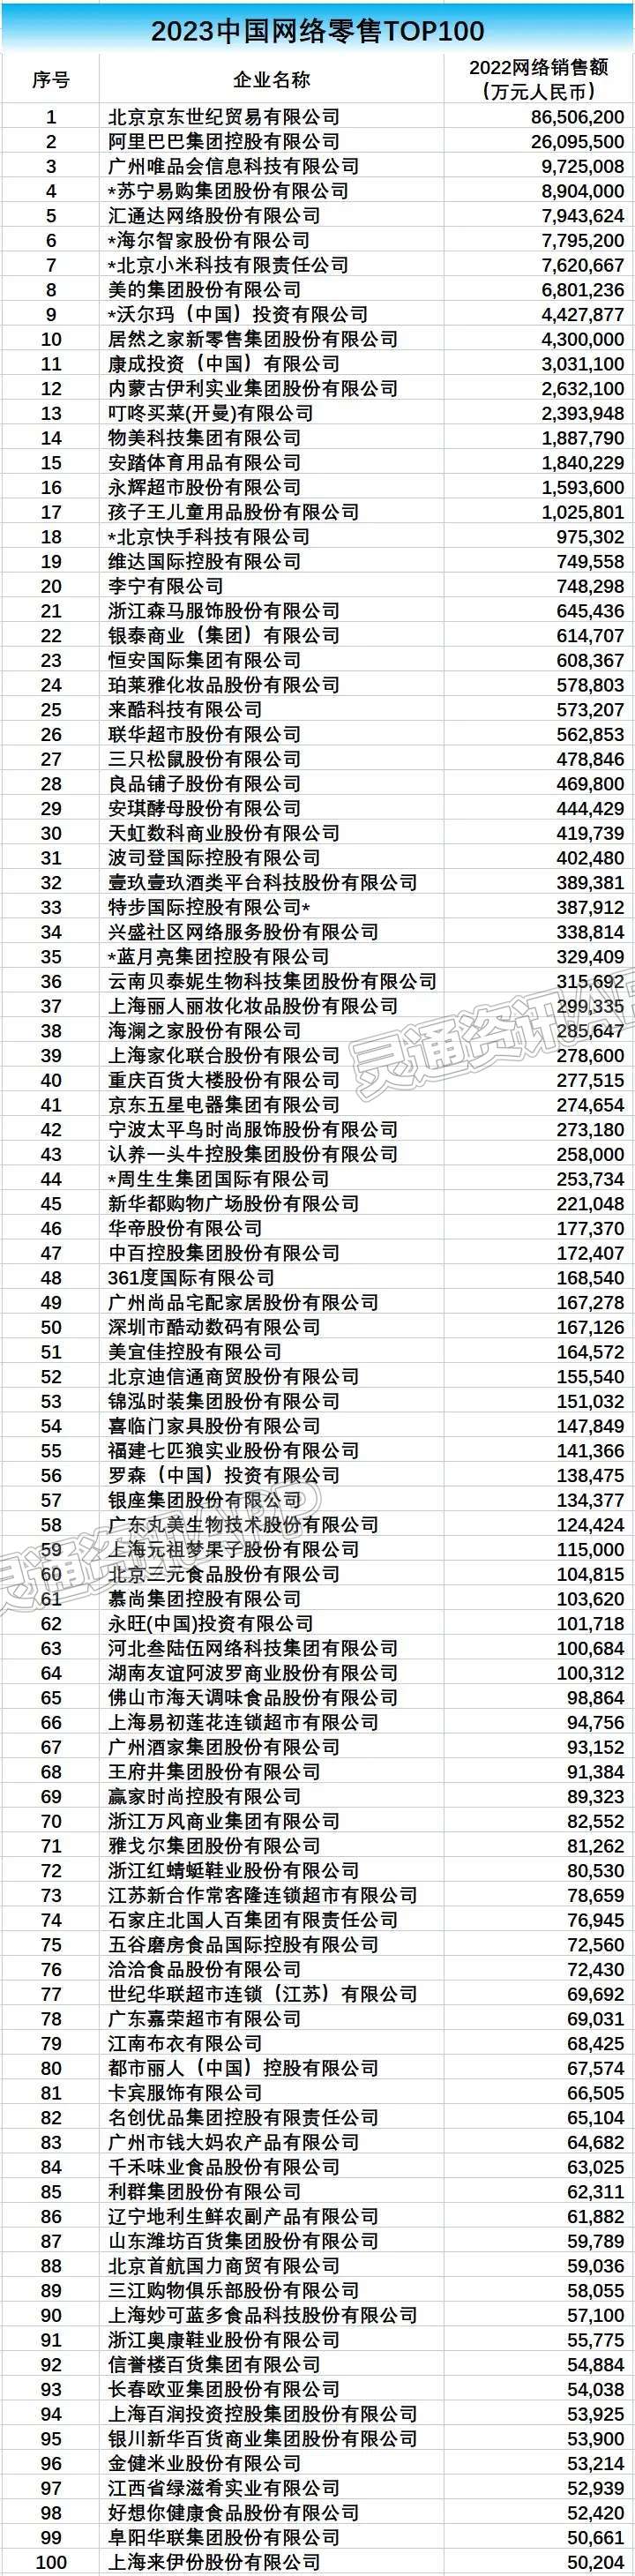 沃尔玛、物美、永辉超市跻身中国网络零售TOP100榜单20强：NG体育APP下载